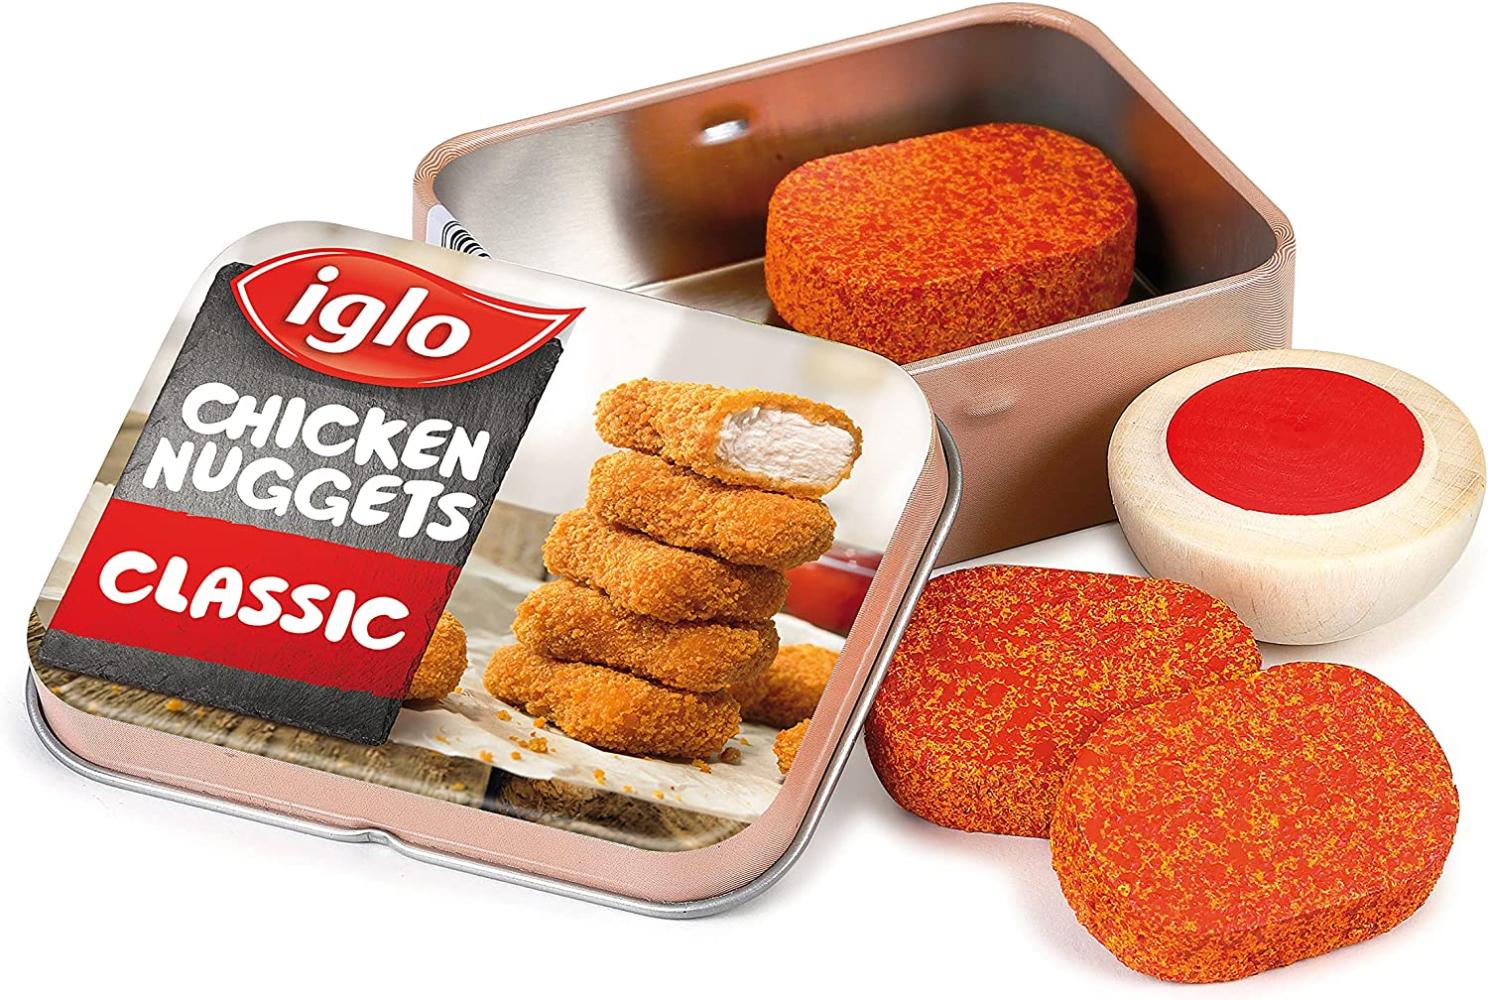 Erzi Chicken Nuggets von Iglo in der Dose Bild 1